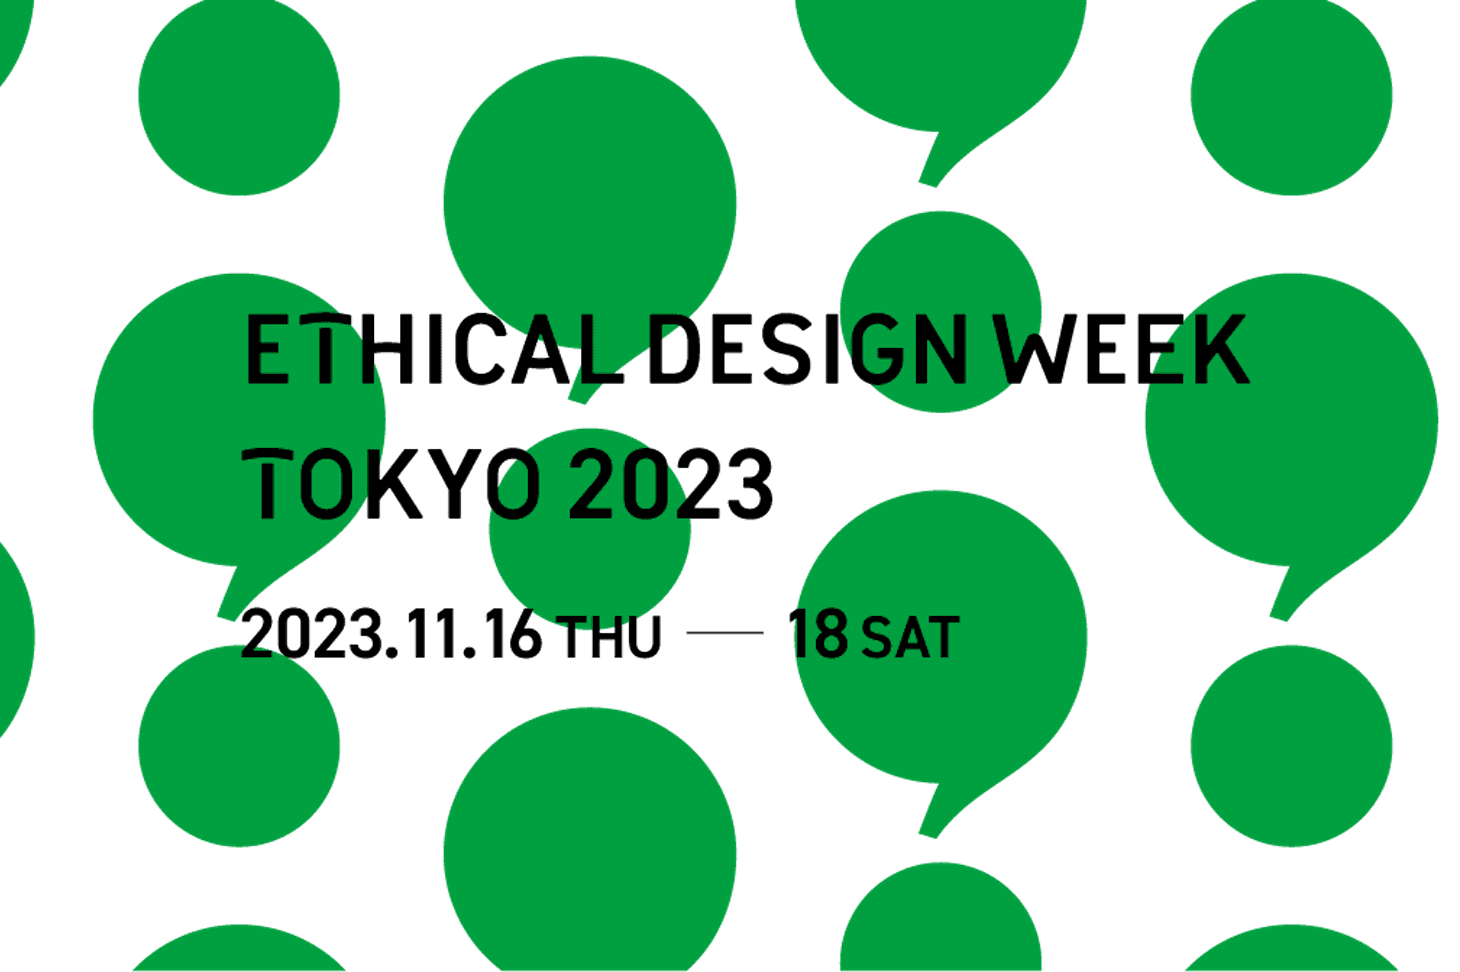 あおいちマルシェ【11/18】『ETHICAL DESIGN WEEK TOKYO 2023』